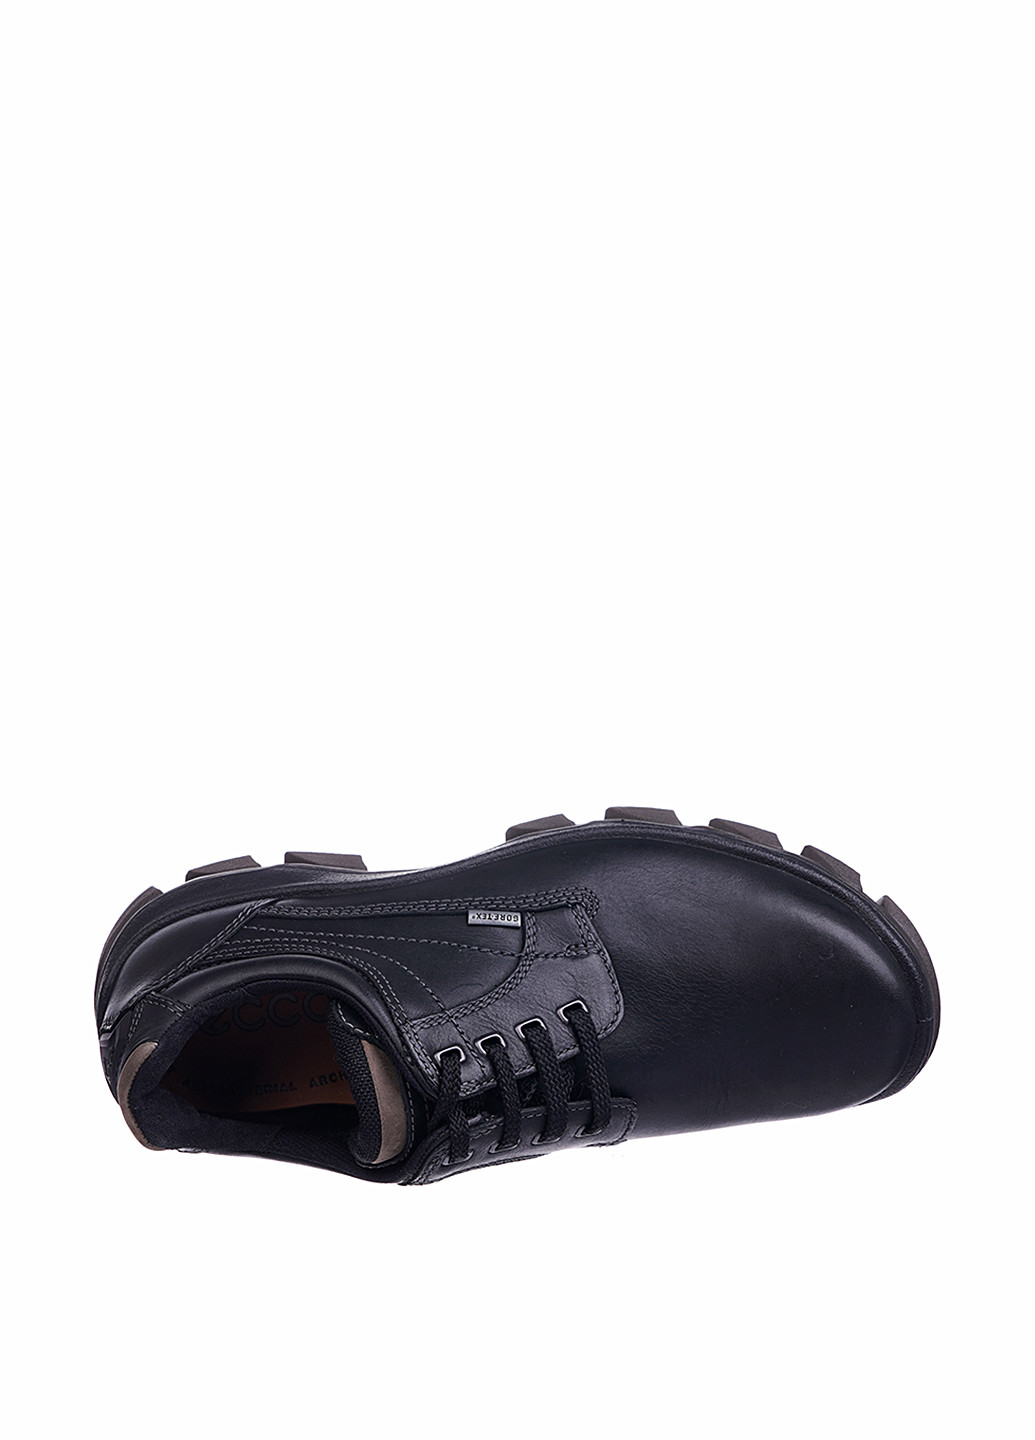 Черные кэжуал туфли Ecco на шнурках